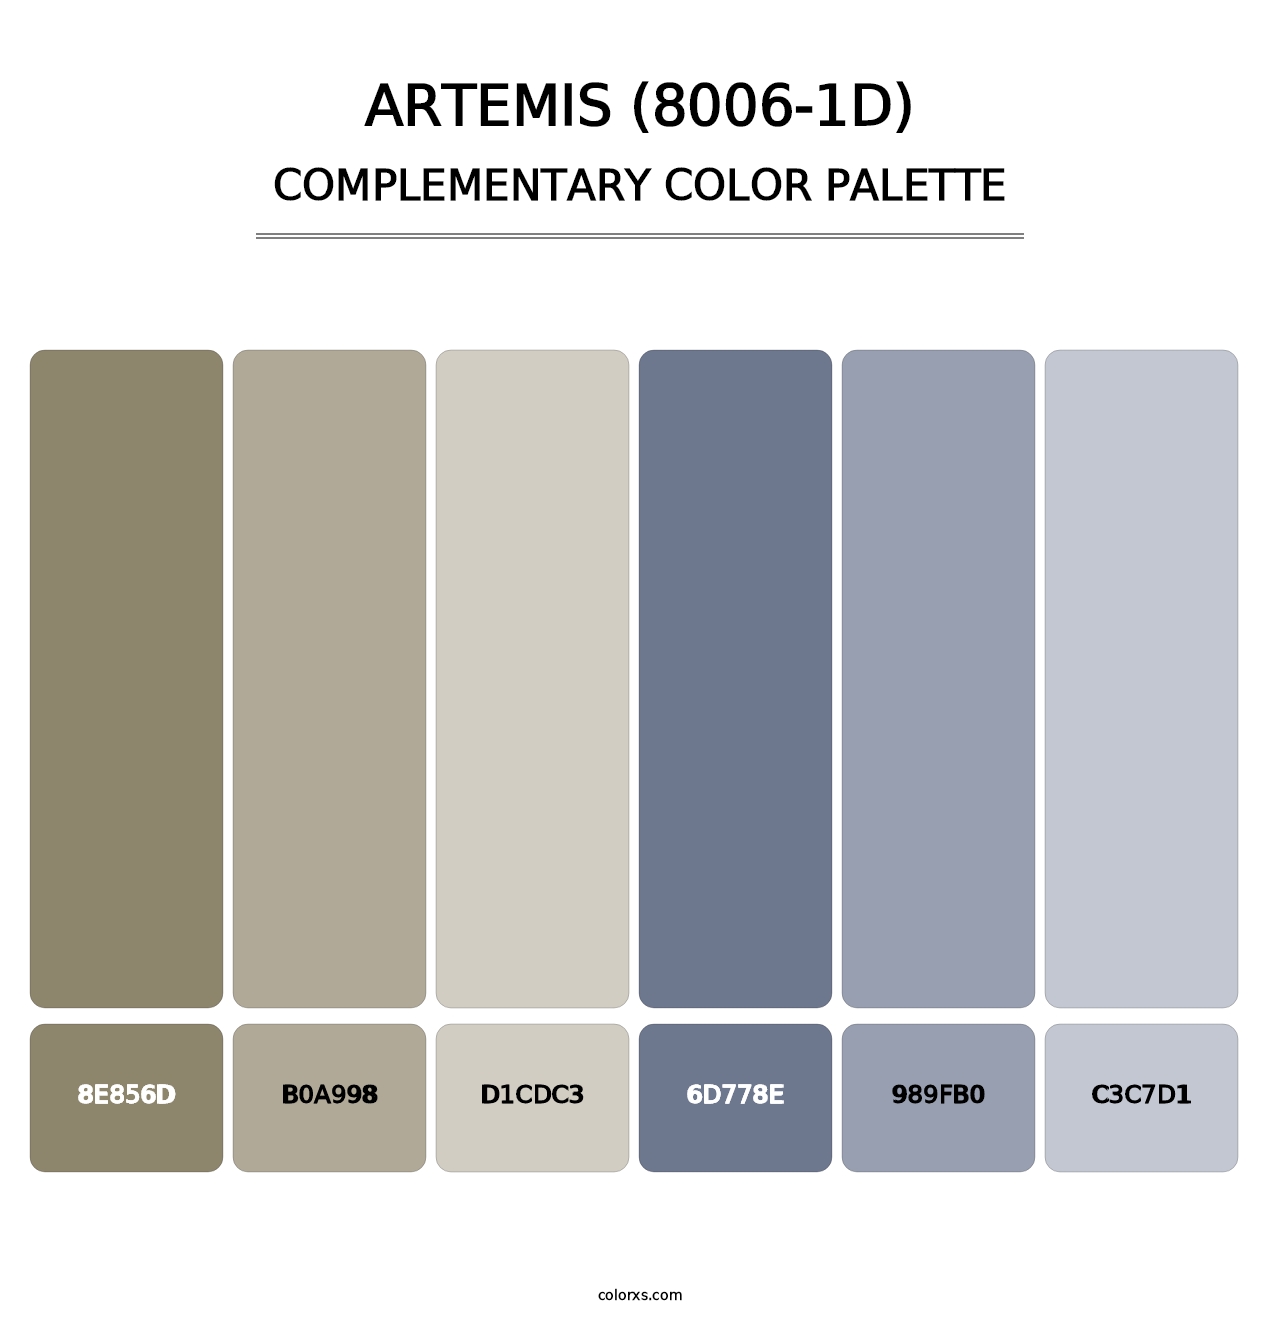 Artemis (8006-1D) - Complementary Color Palette